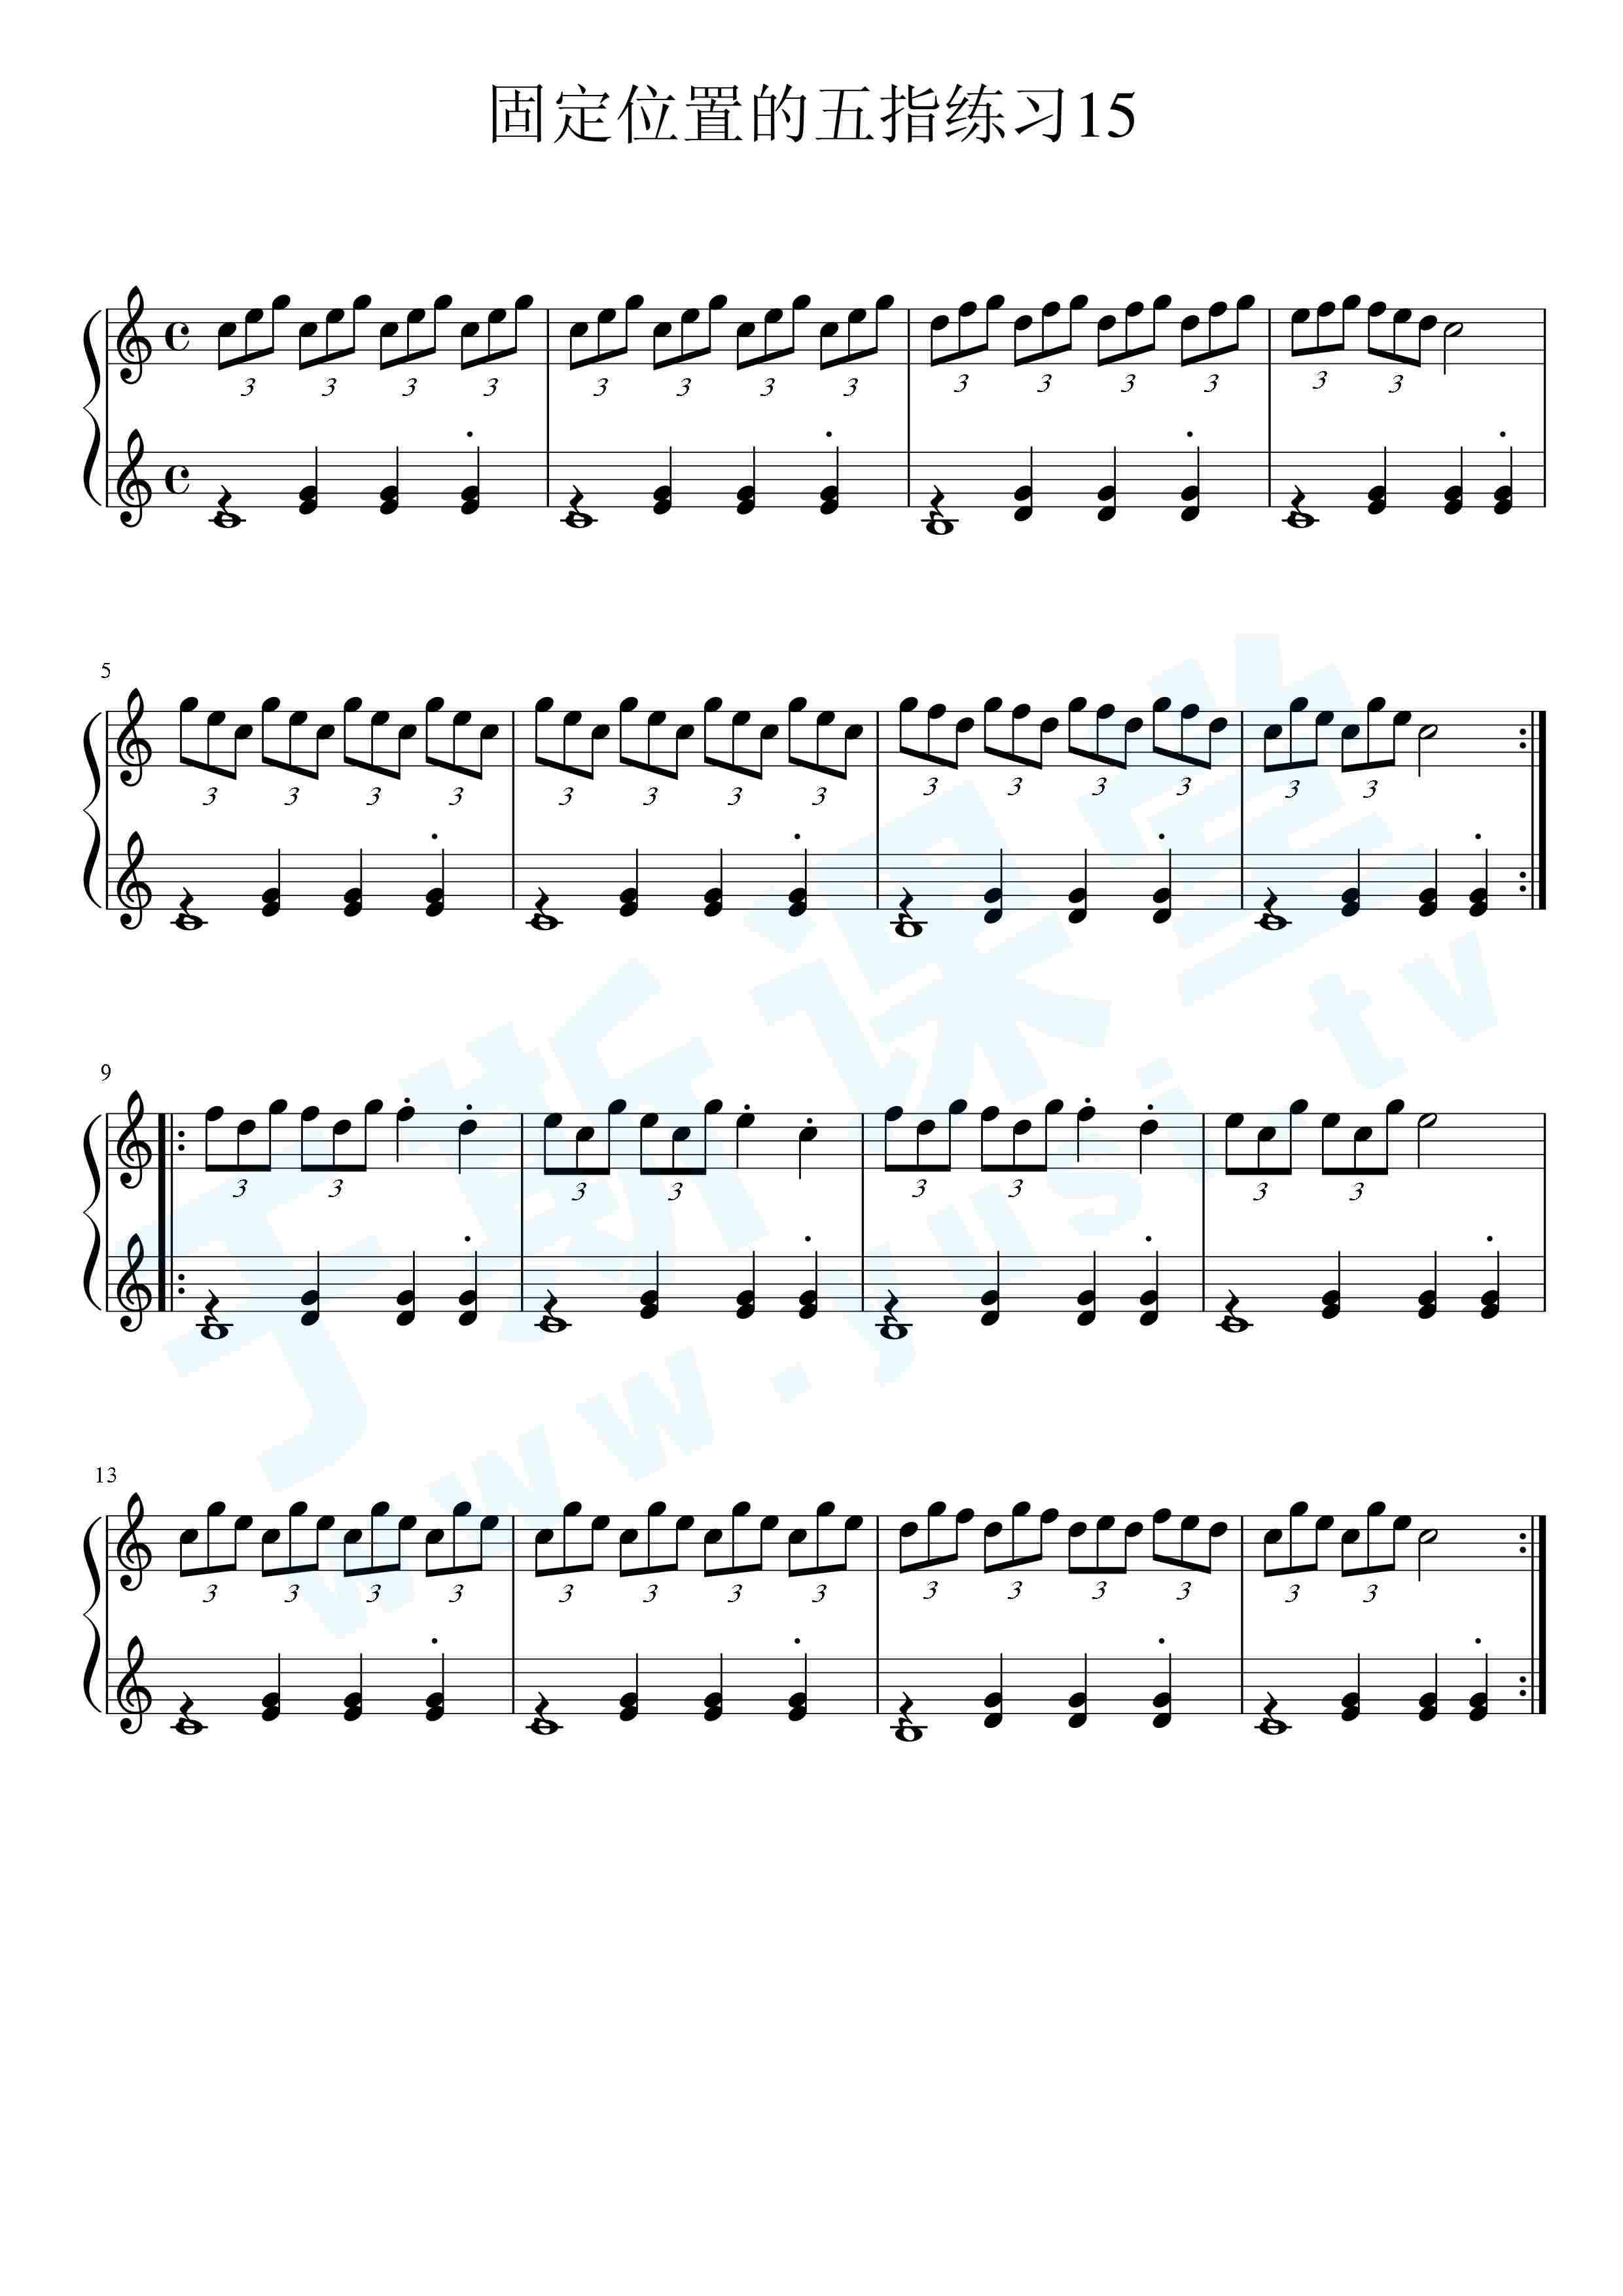 车尔尼599 no15钢琴曲谱,于斯课堂精心出品